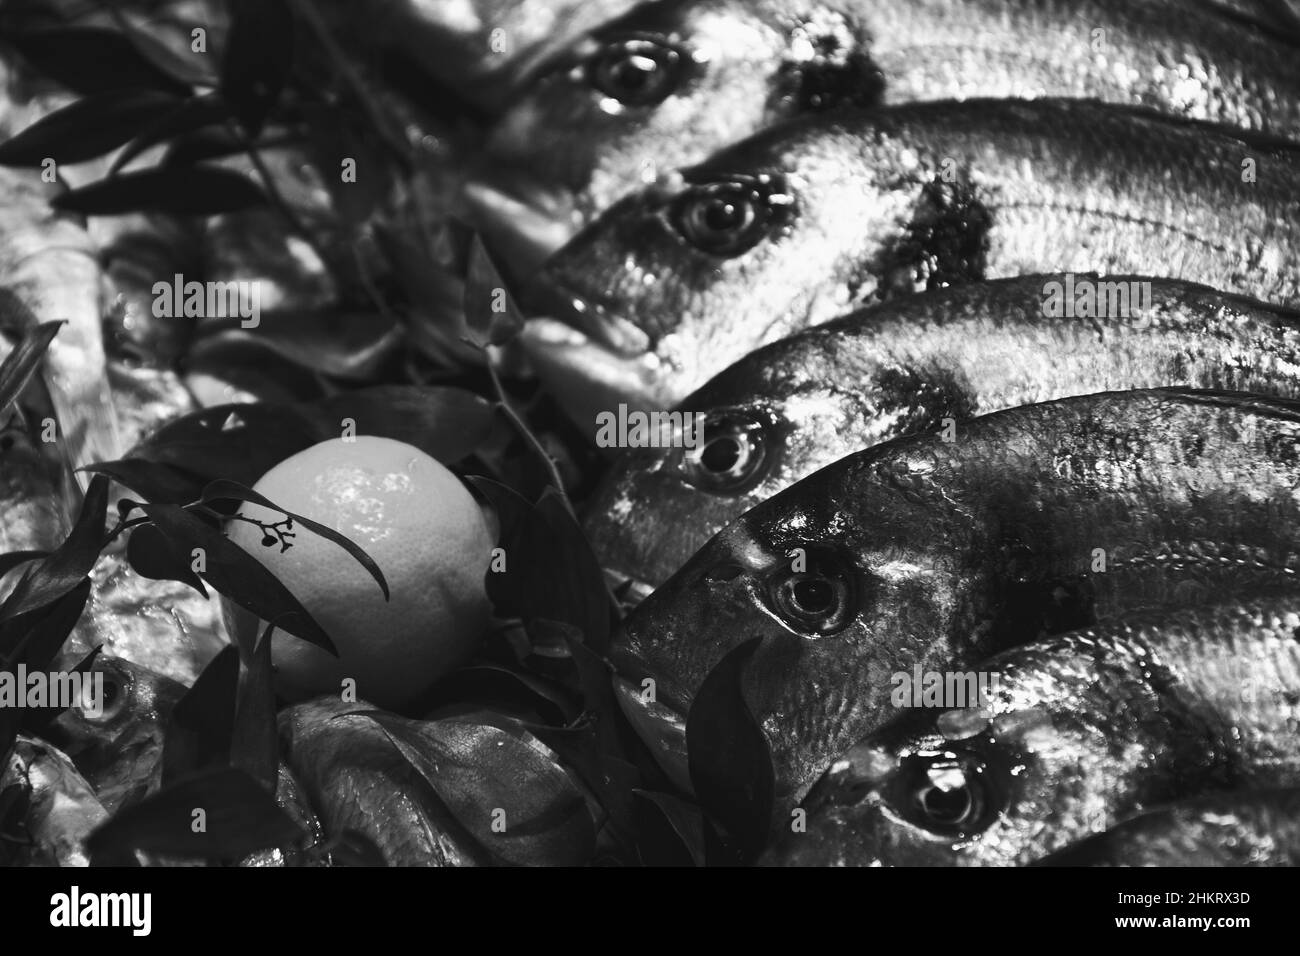 Europäischer Bass und Brill zum Verkauf und Fischmarkt in Frankreich. Fische haben wichtige Nährstoffe wie Eiweiß, Vitamin D und Omega-3. Schwarzweißfoto Stockfoto